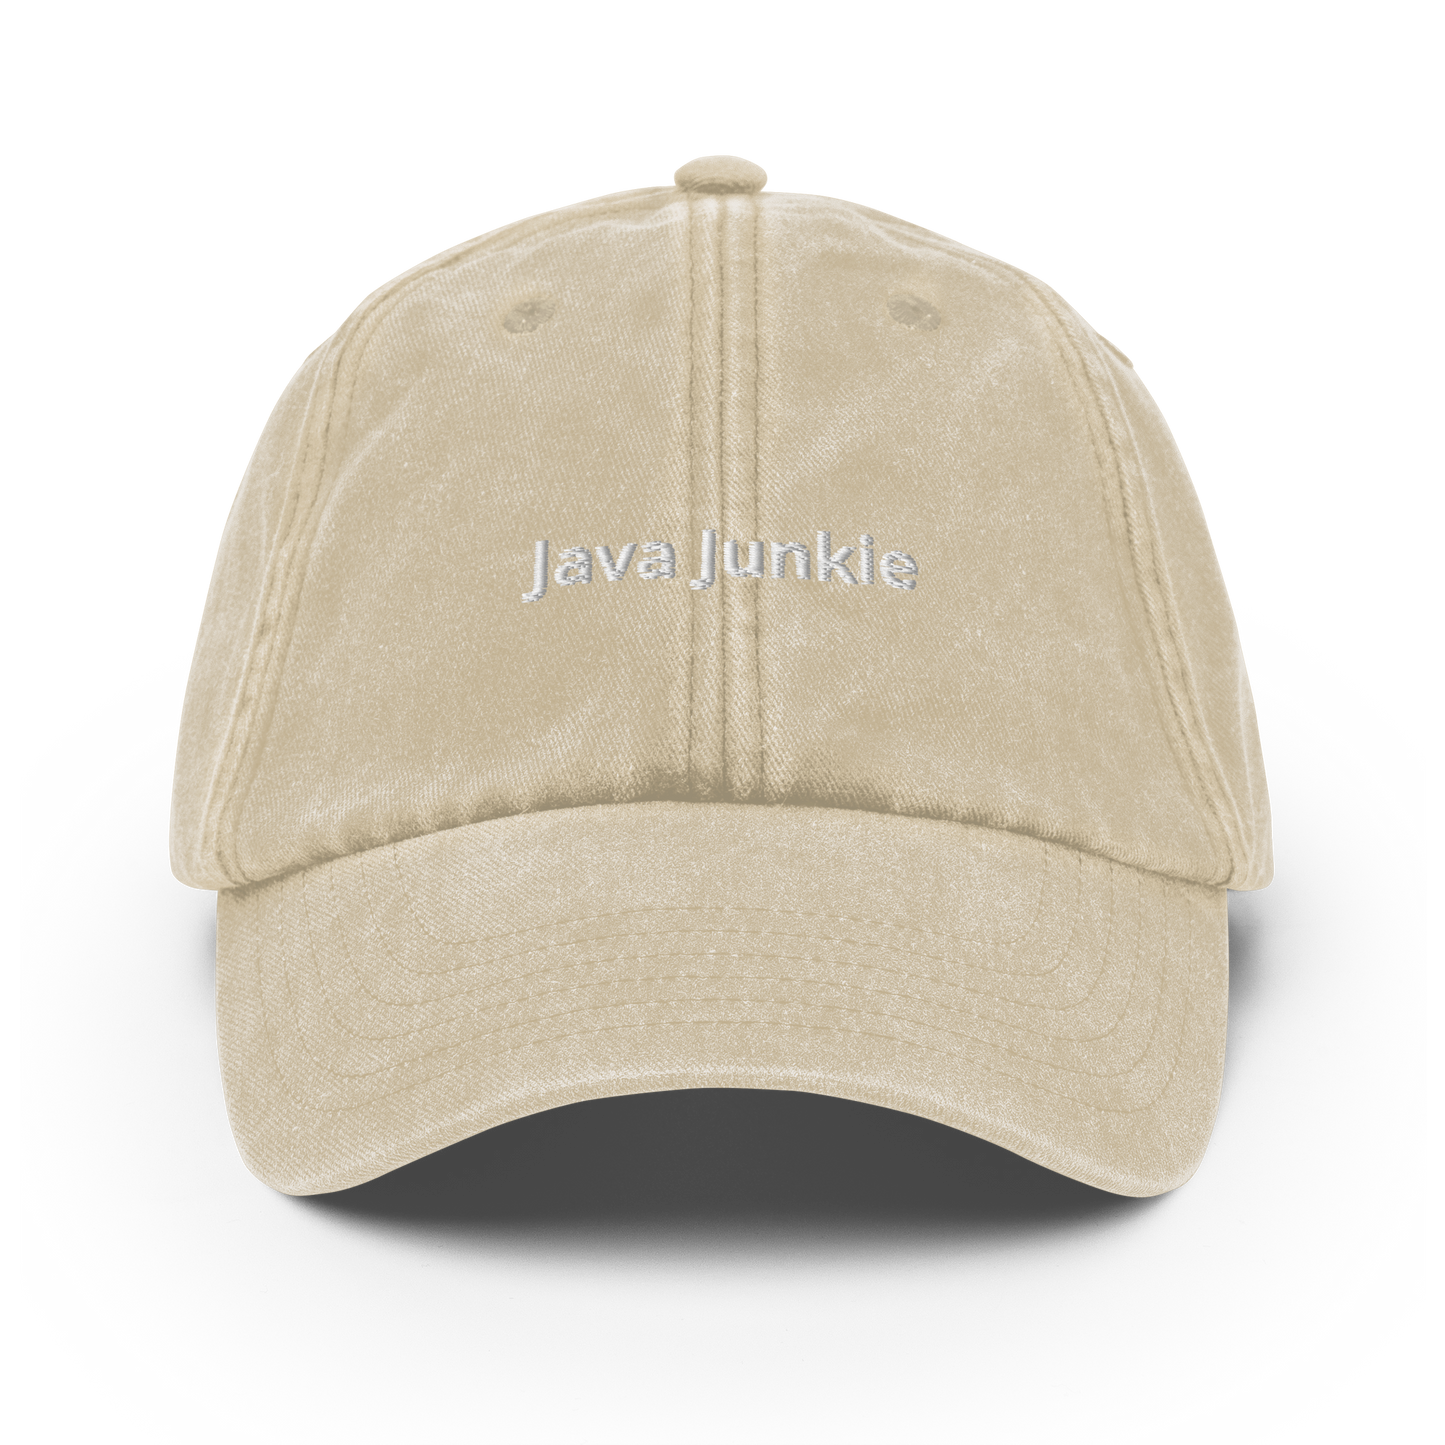 Java Junkie - Vintage Hat